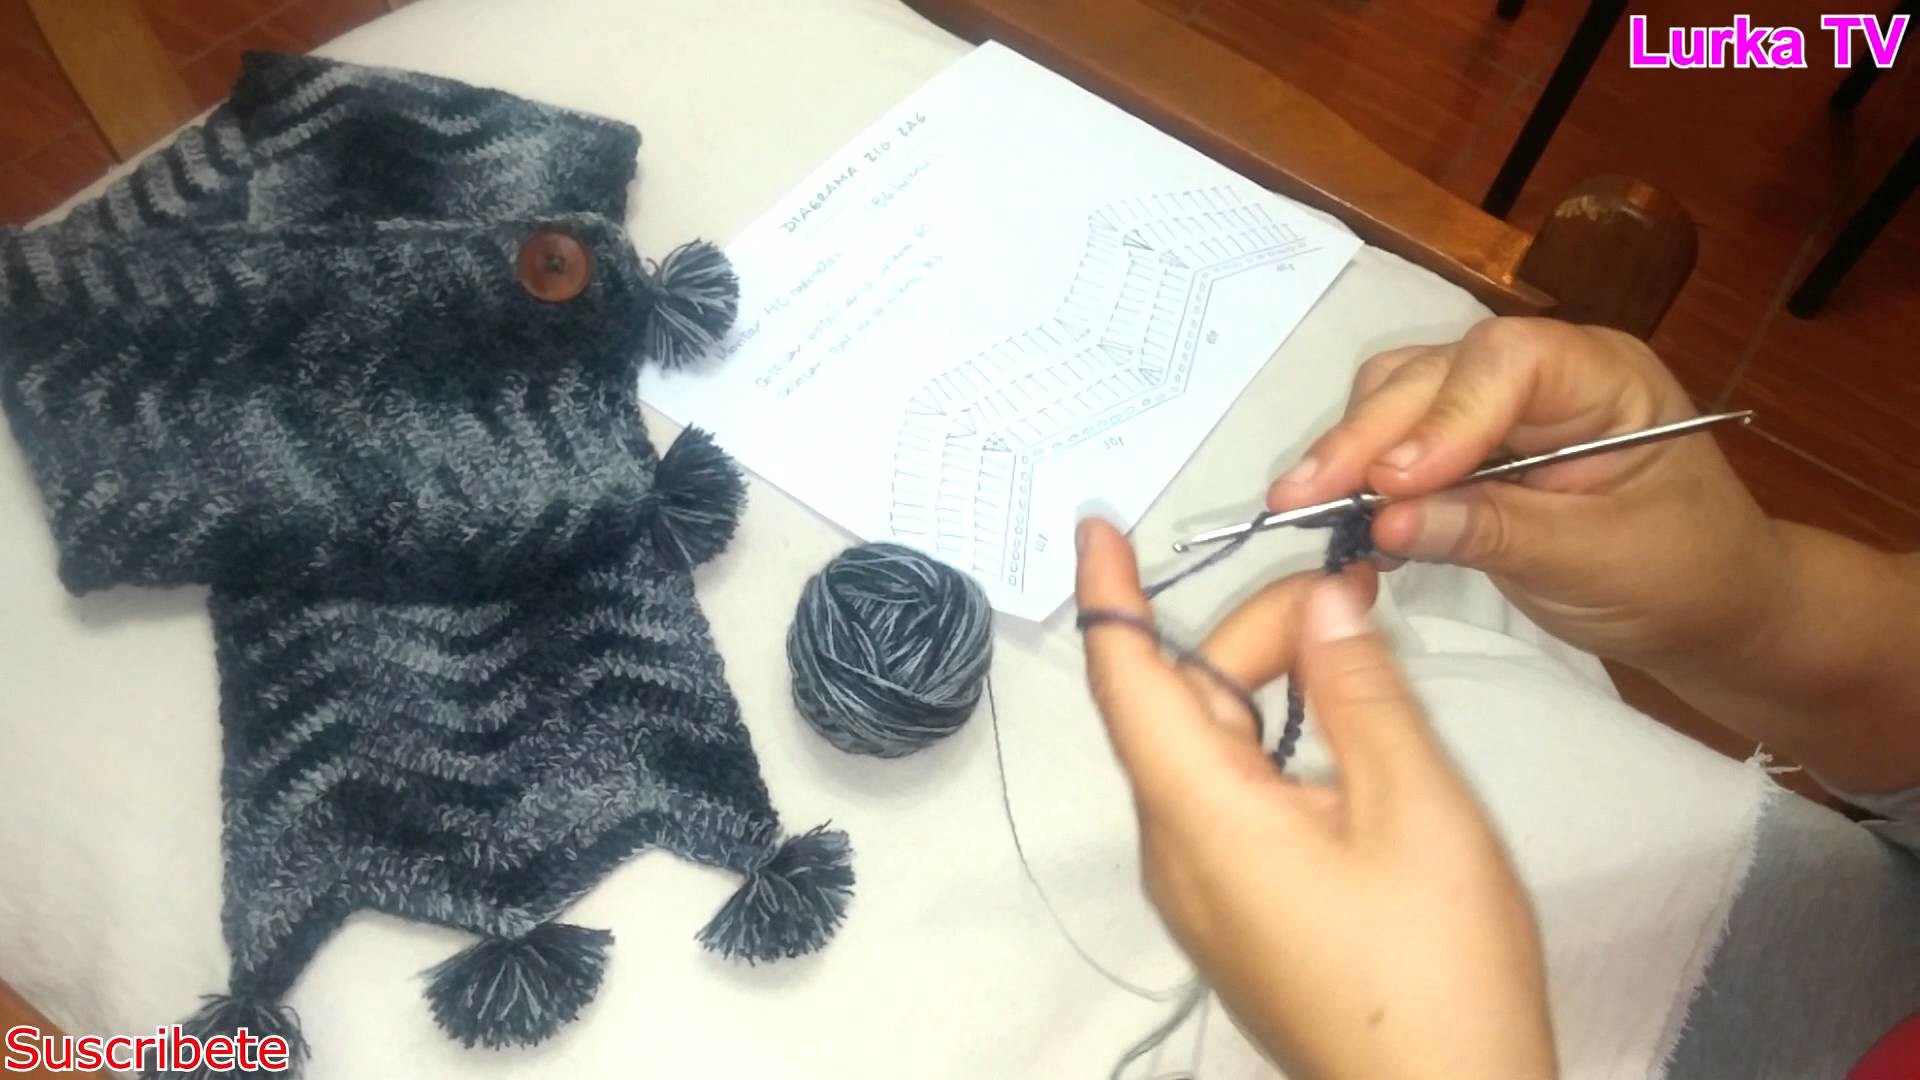 Bufanda tejida a crochet en zig zag con aplicación de pompones parte 01.Crochet scarf woven zigzag